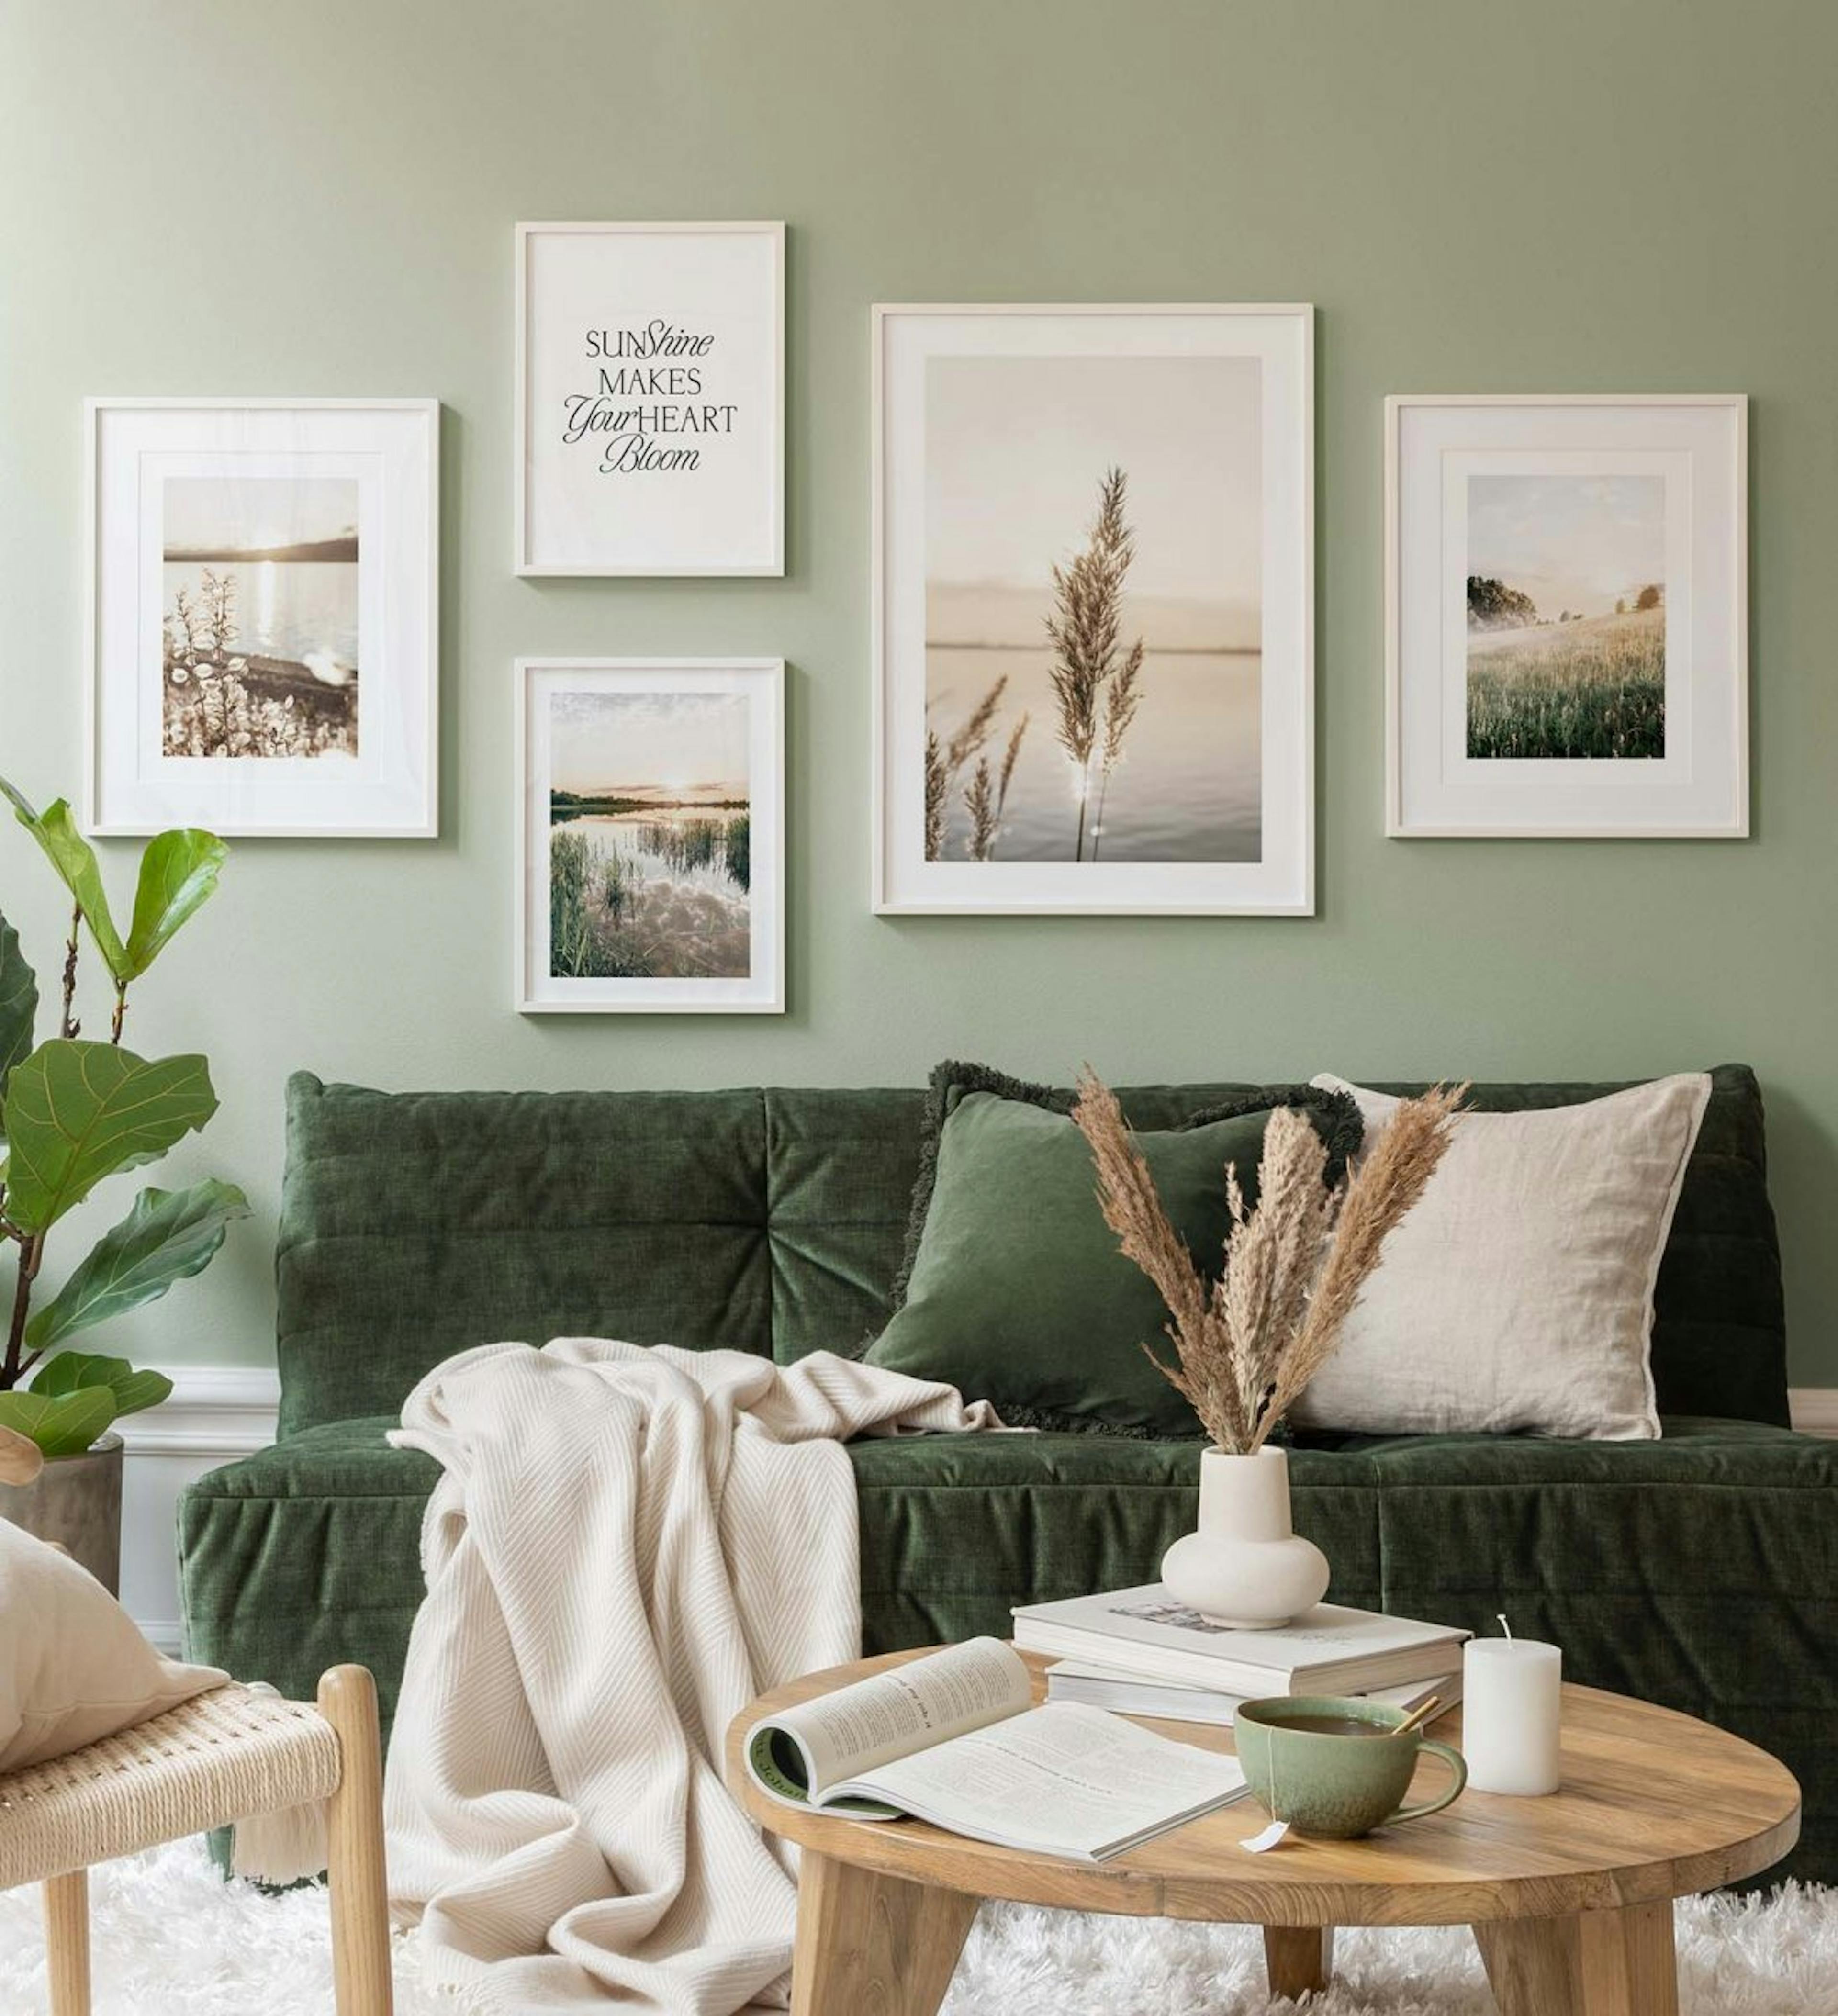 Fotografia peisagistică pe tema verde creează o senzație de serenitate în camera de zi